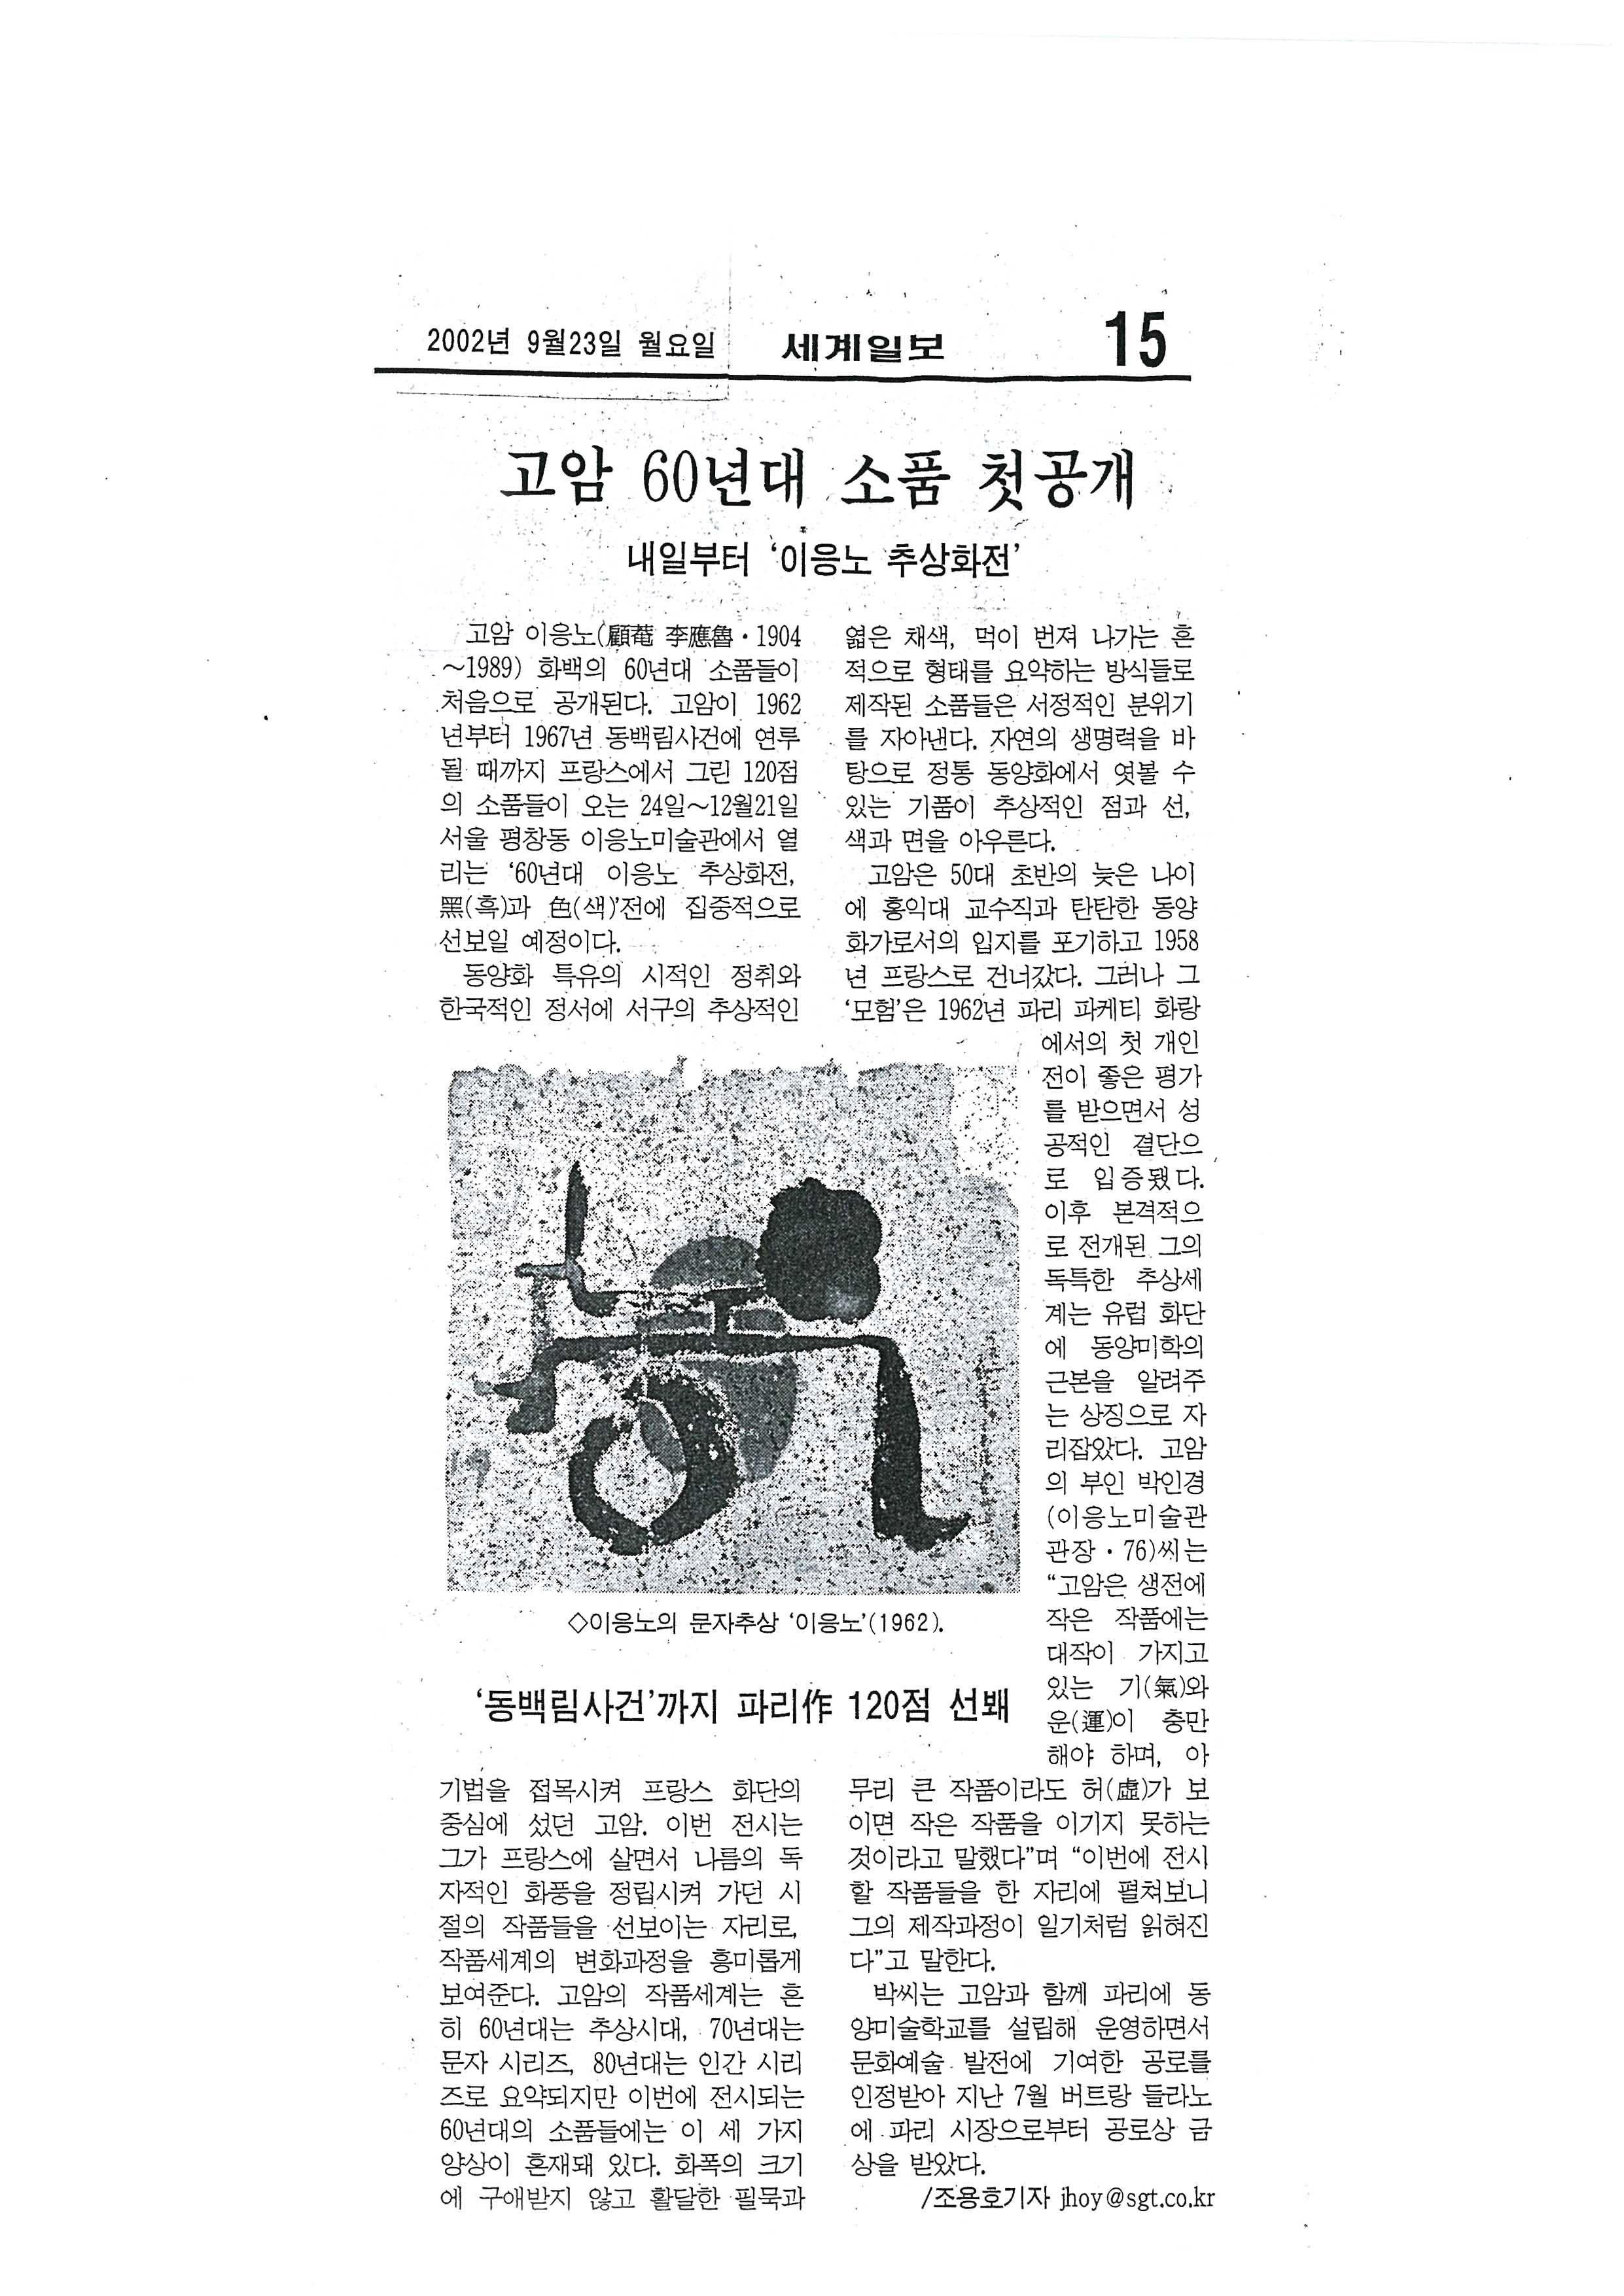 「고암 60년대 소품 첫 공개: 내일부터 '이응노 추상화전'」, 『세계일보』